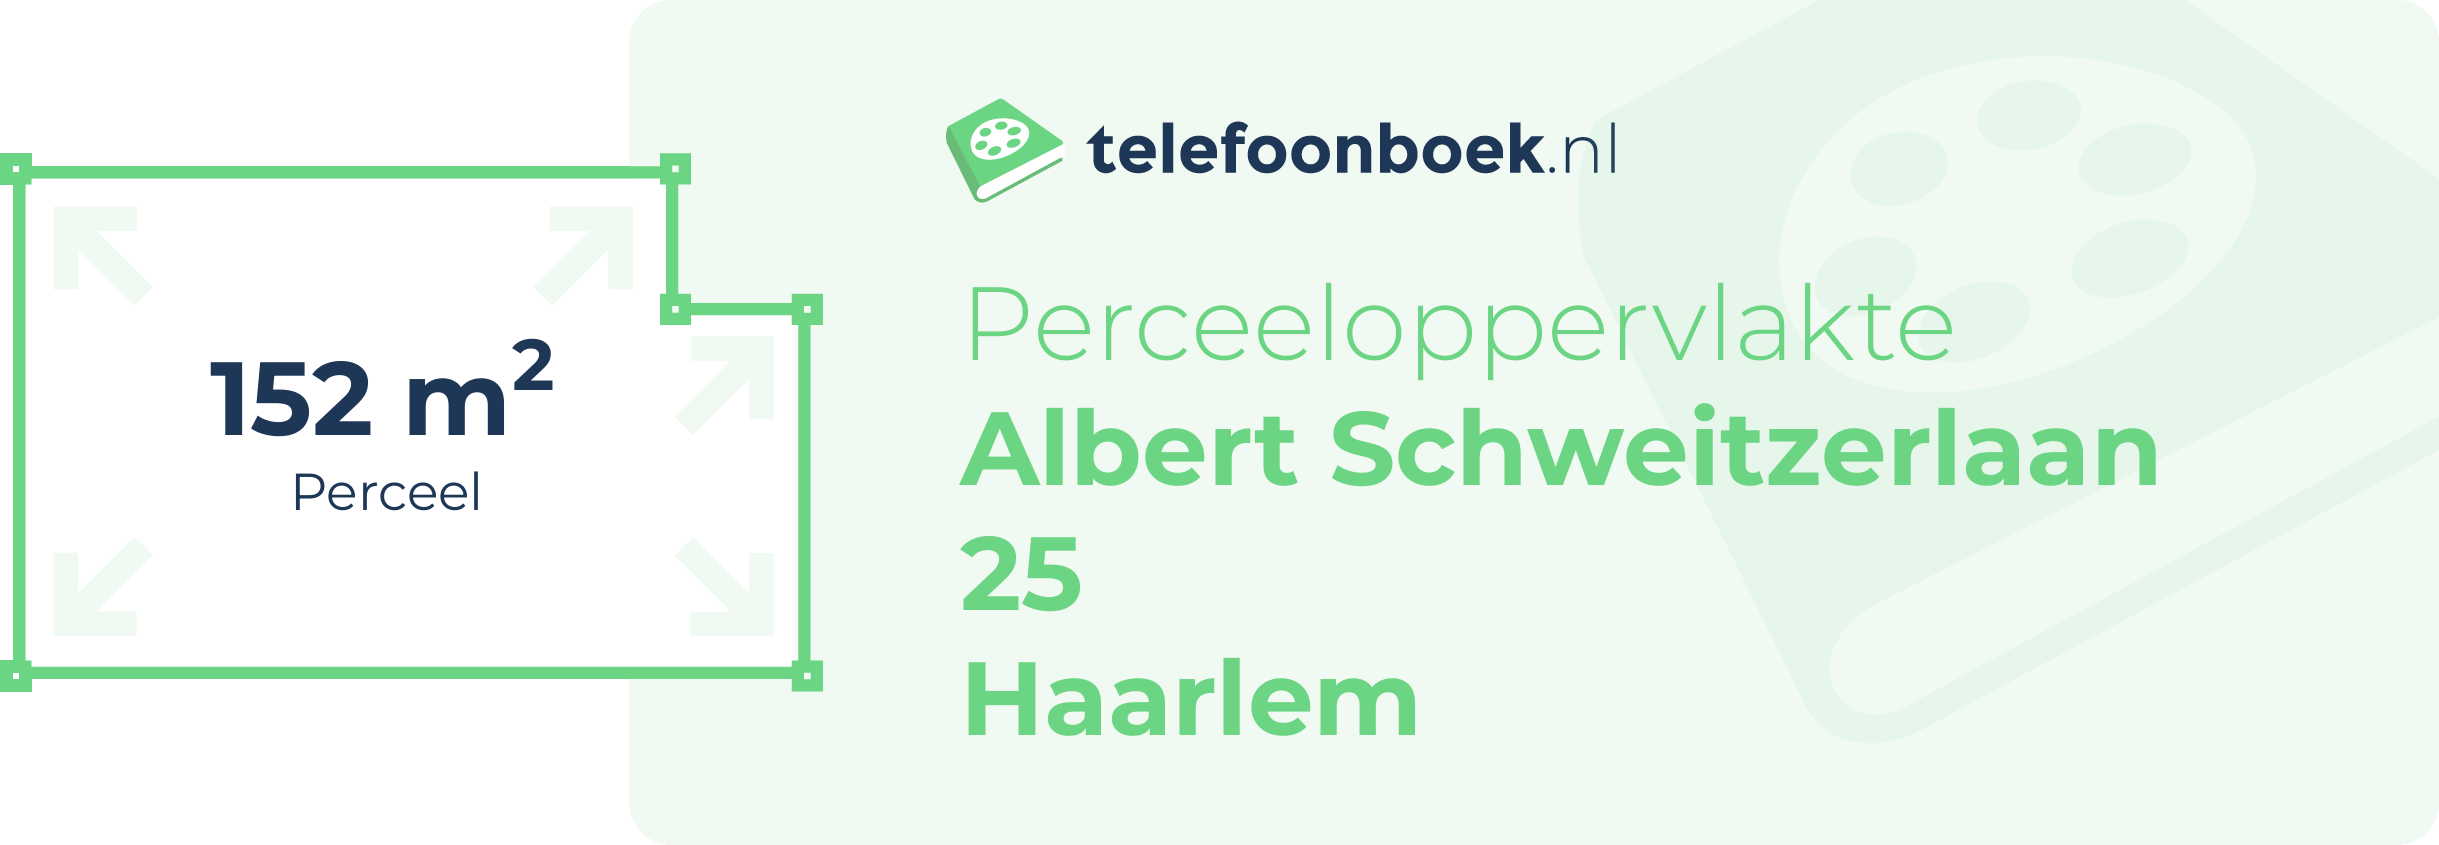 Perceeloppervlakte Albert Schweitzerlaan 25 Haarlem